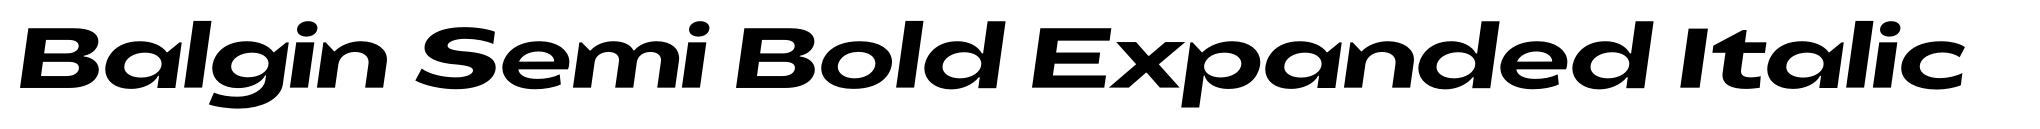 Balgin Semi Bold Expanded Italic image